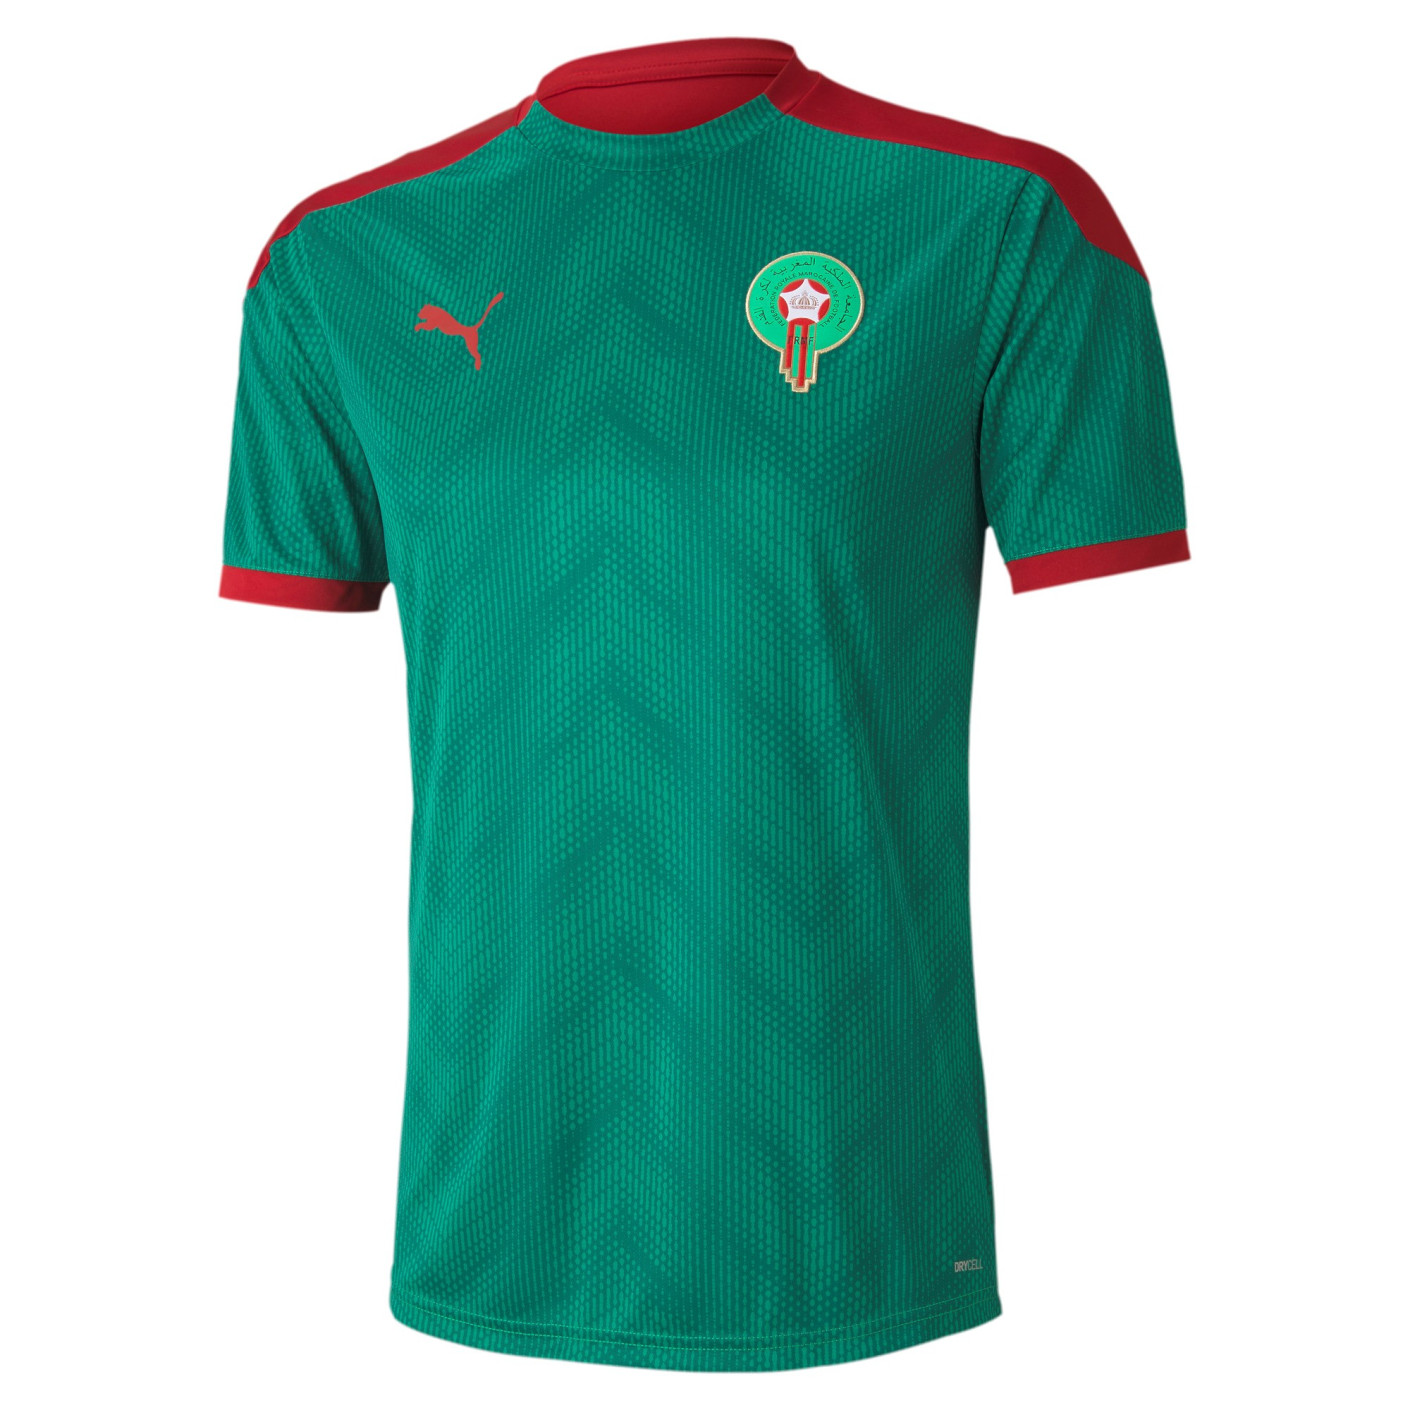 PUMA Marokko Stadium Trainingsshirt 2020-2021 Groen Rood